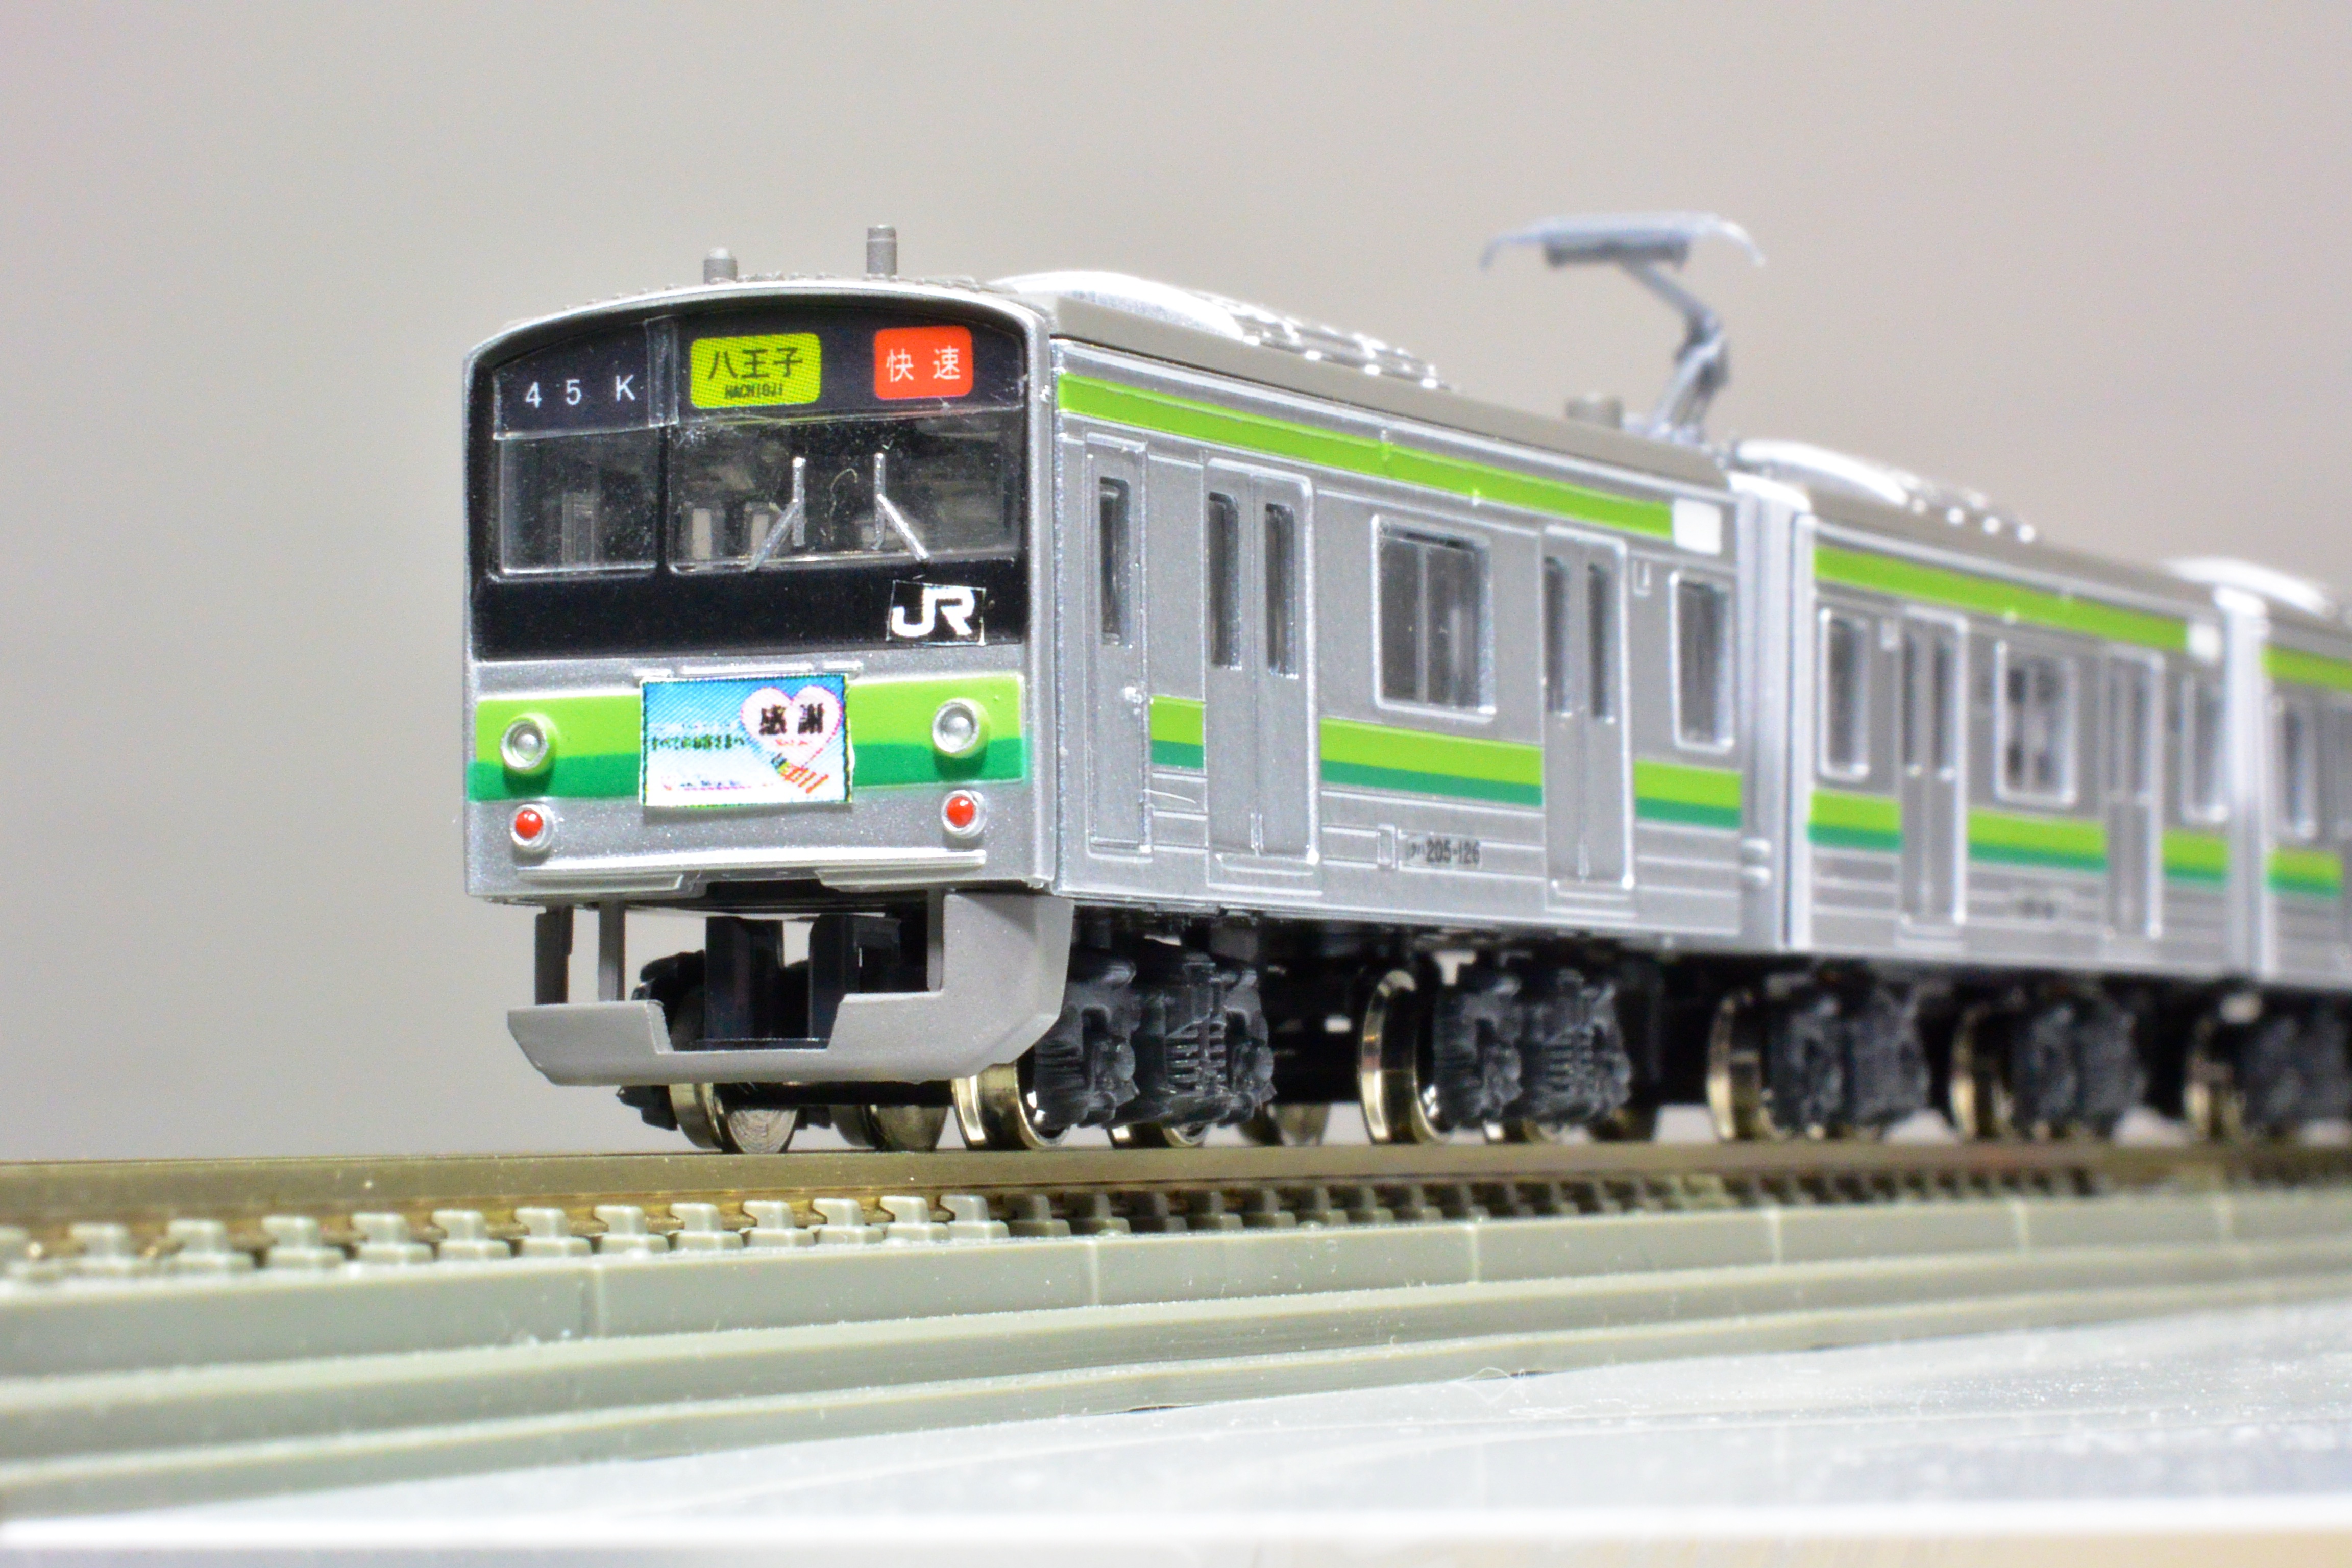 Bトレイン】懐かしの205系横浜線「さよなら運転仕様」 - 鉄道模型部